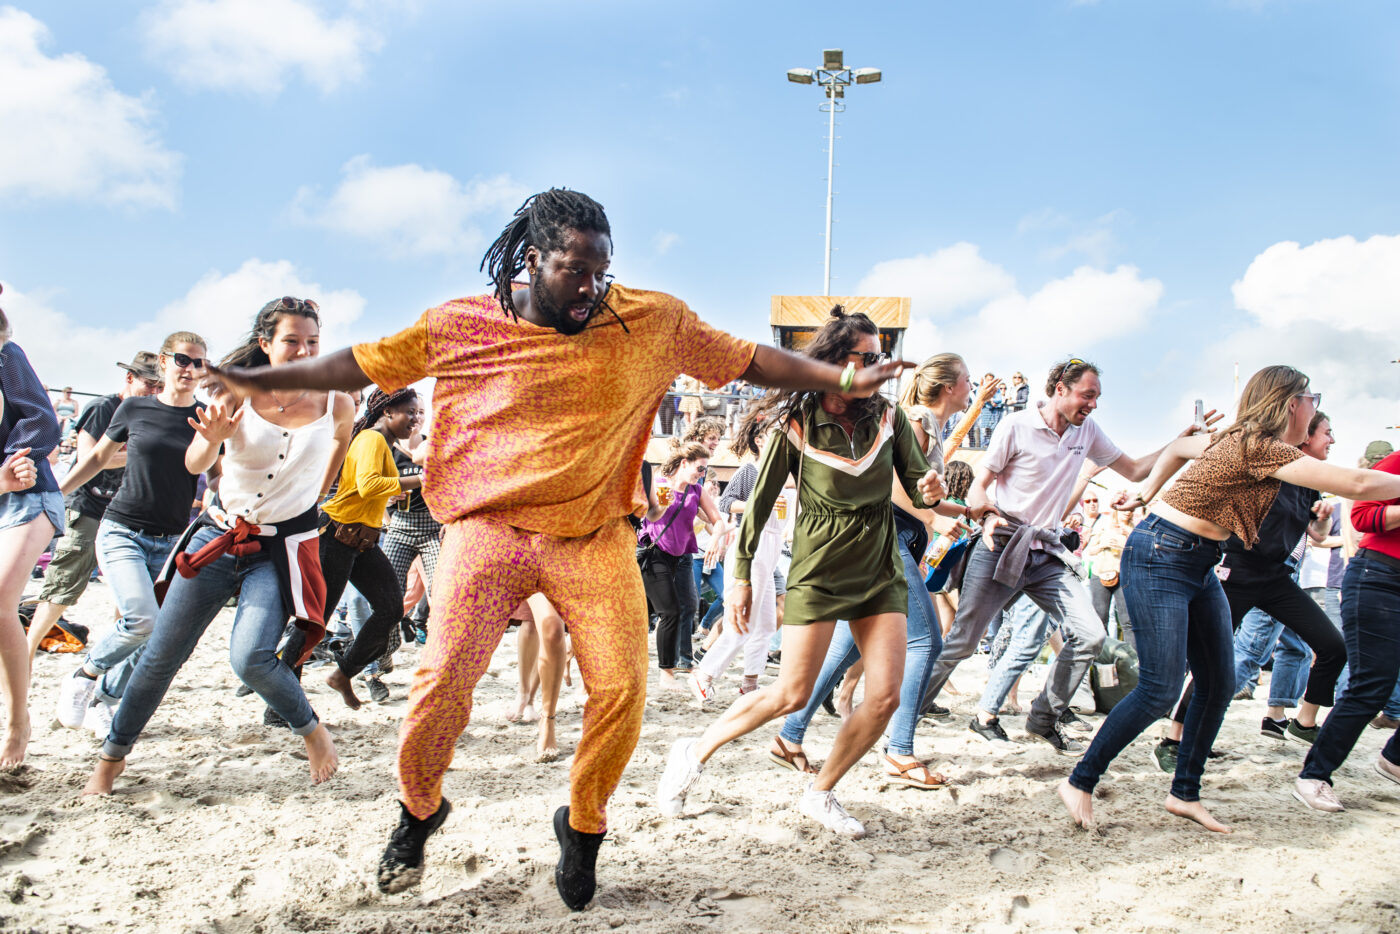 Mensen dansen in het zand op muziek van KD soundsystem op festivalterrein de Betonning tijdens Oerol 2019